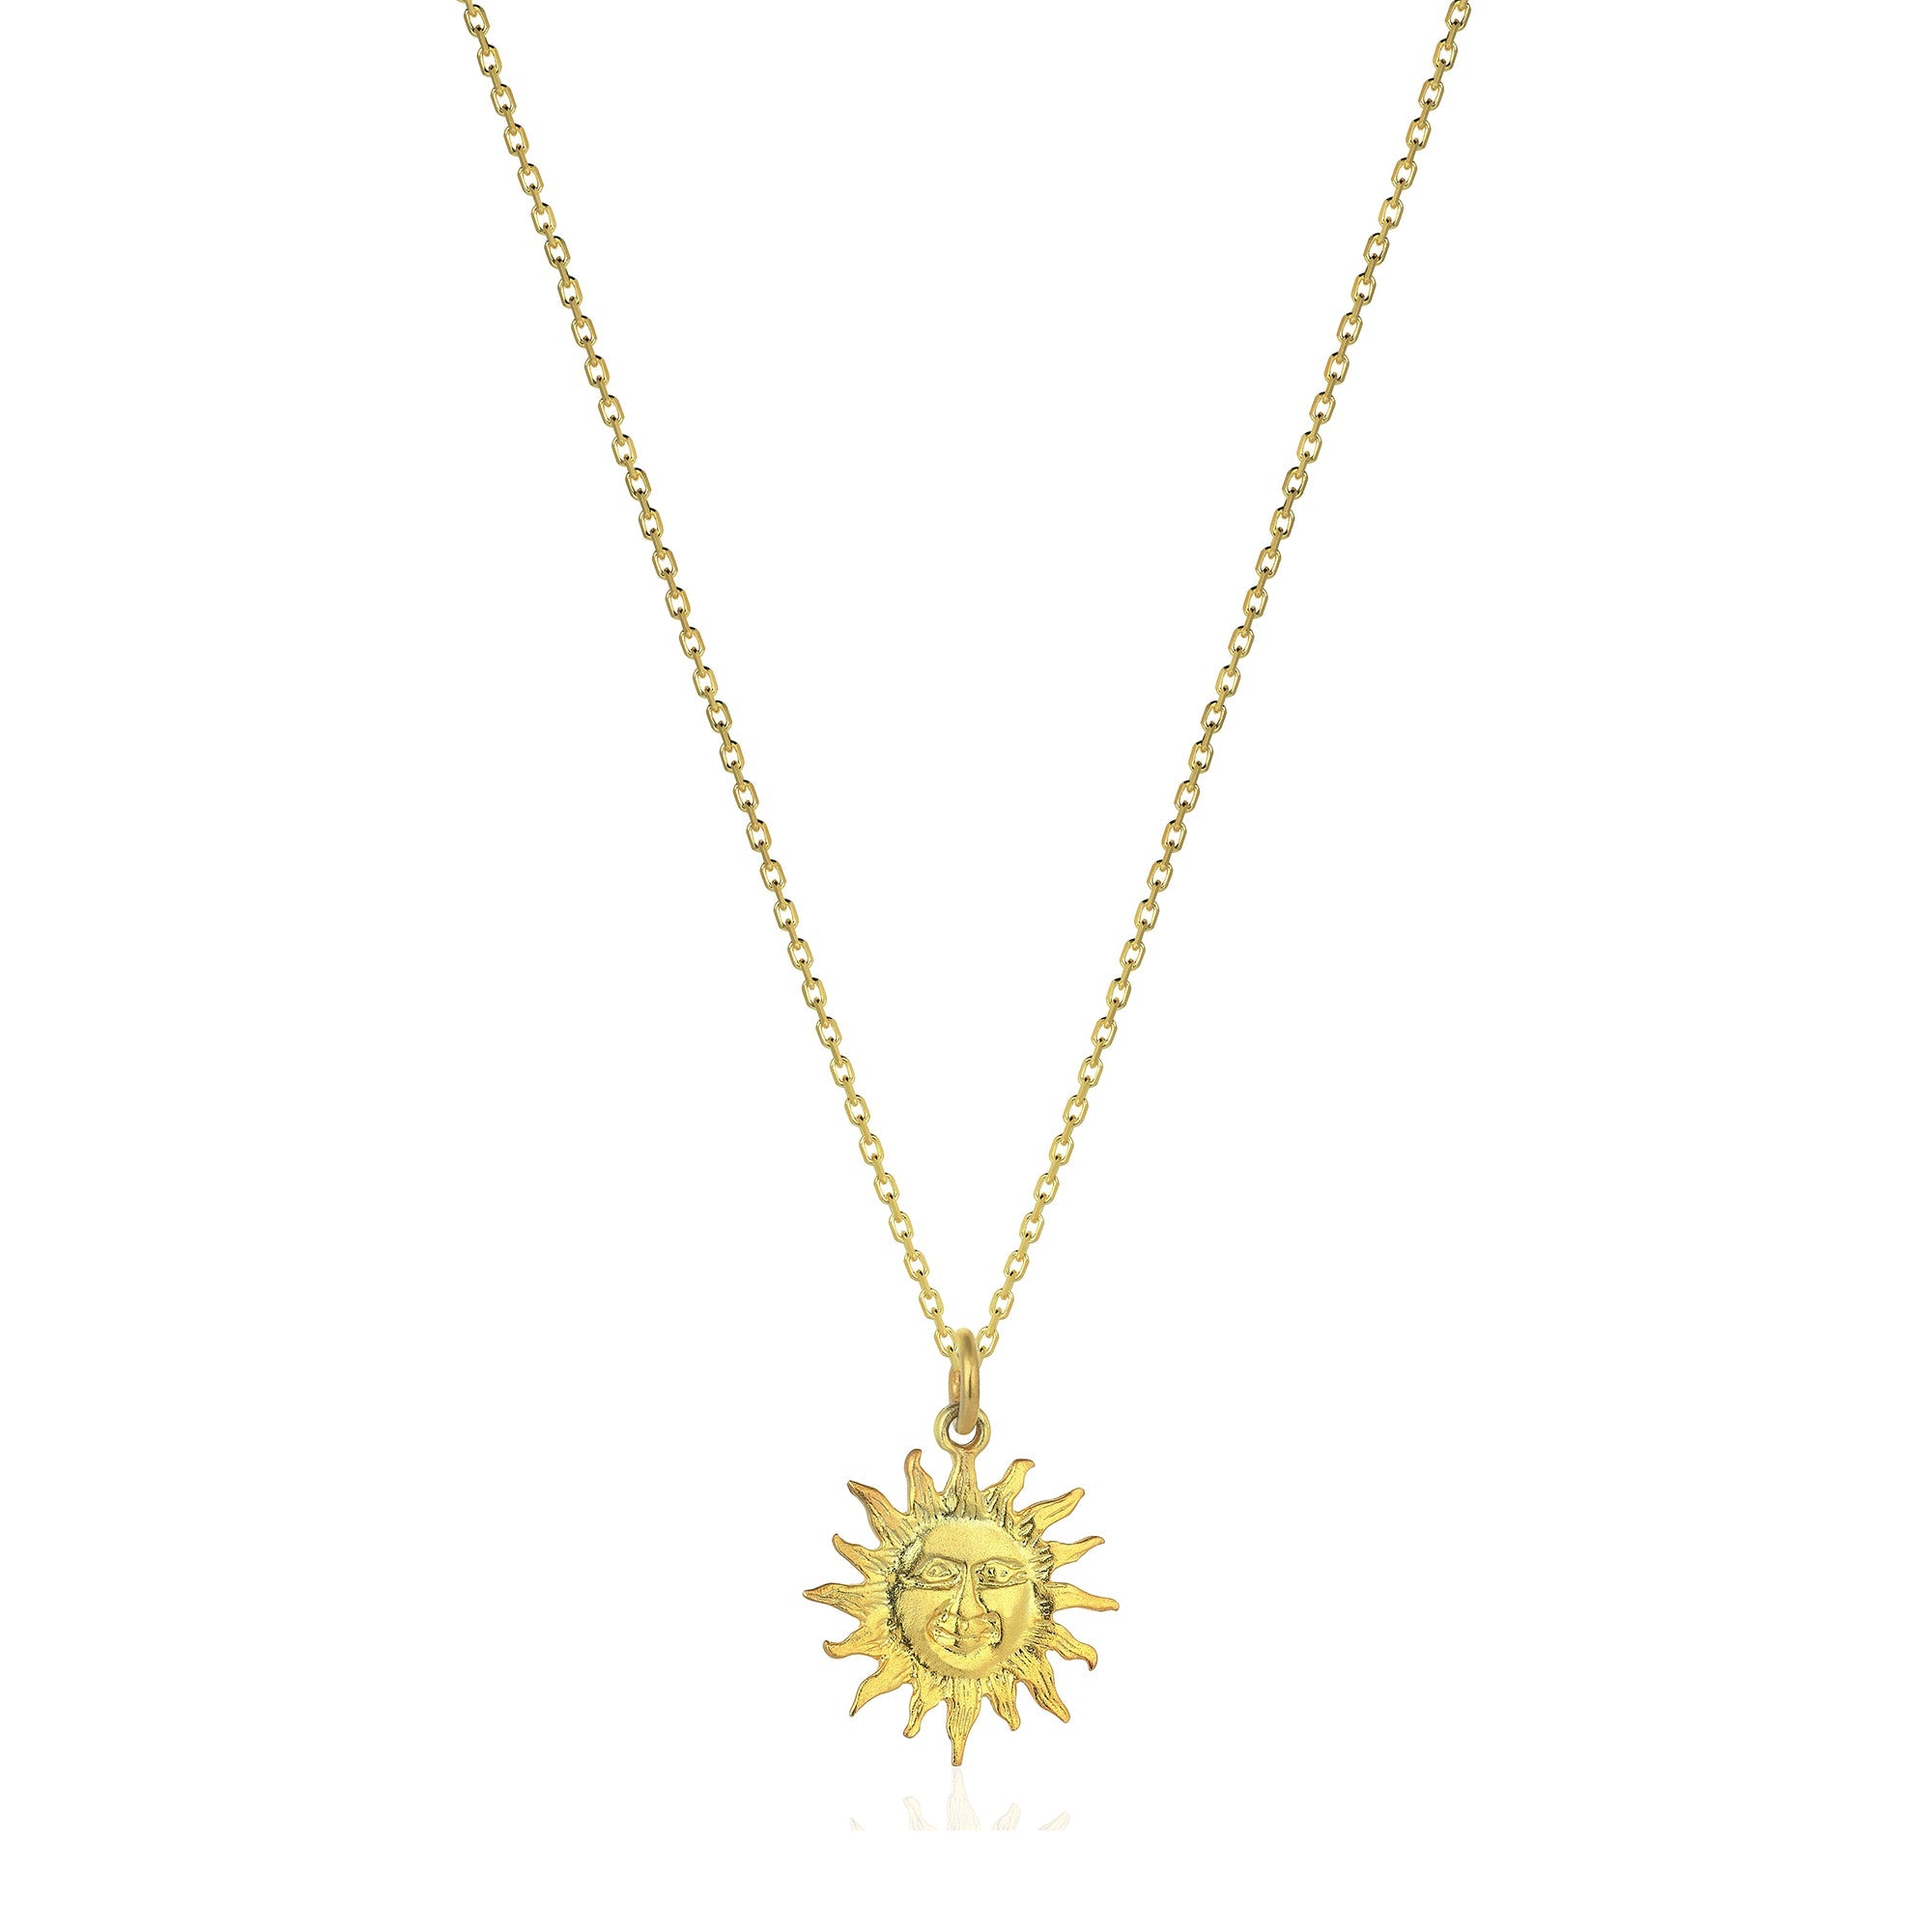 The Sicilian Sun Necklace